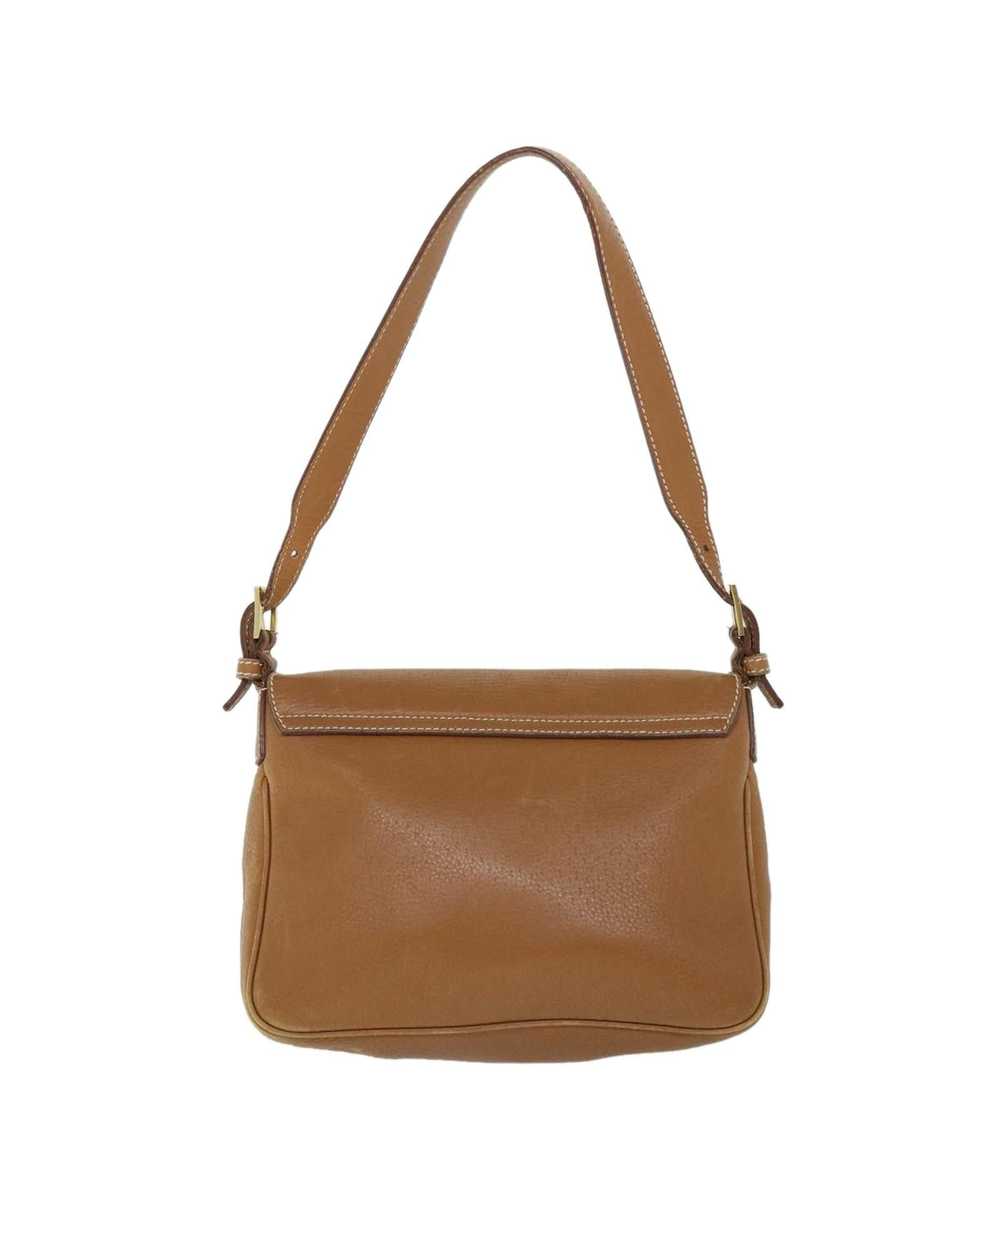 Salvatore Ferragamo Elegant Brown Leather Bag - image 3